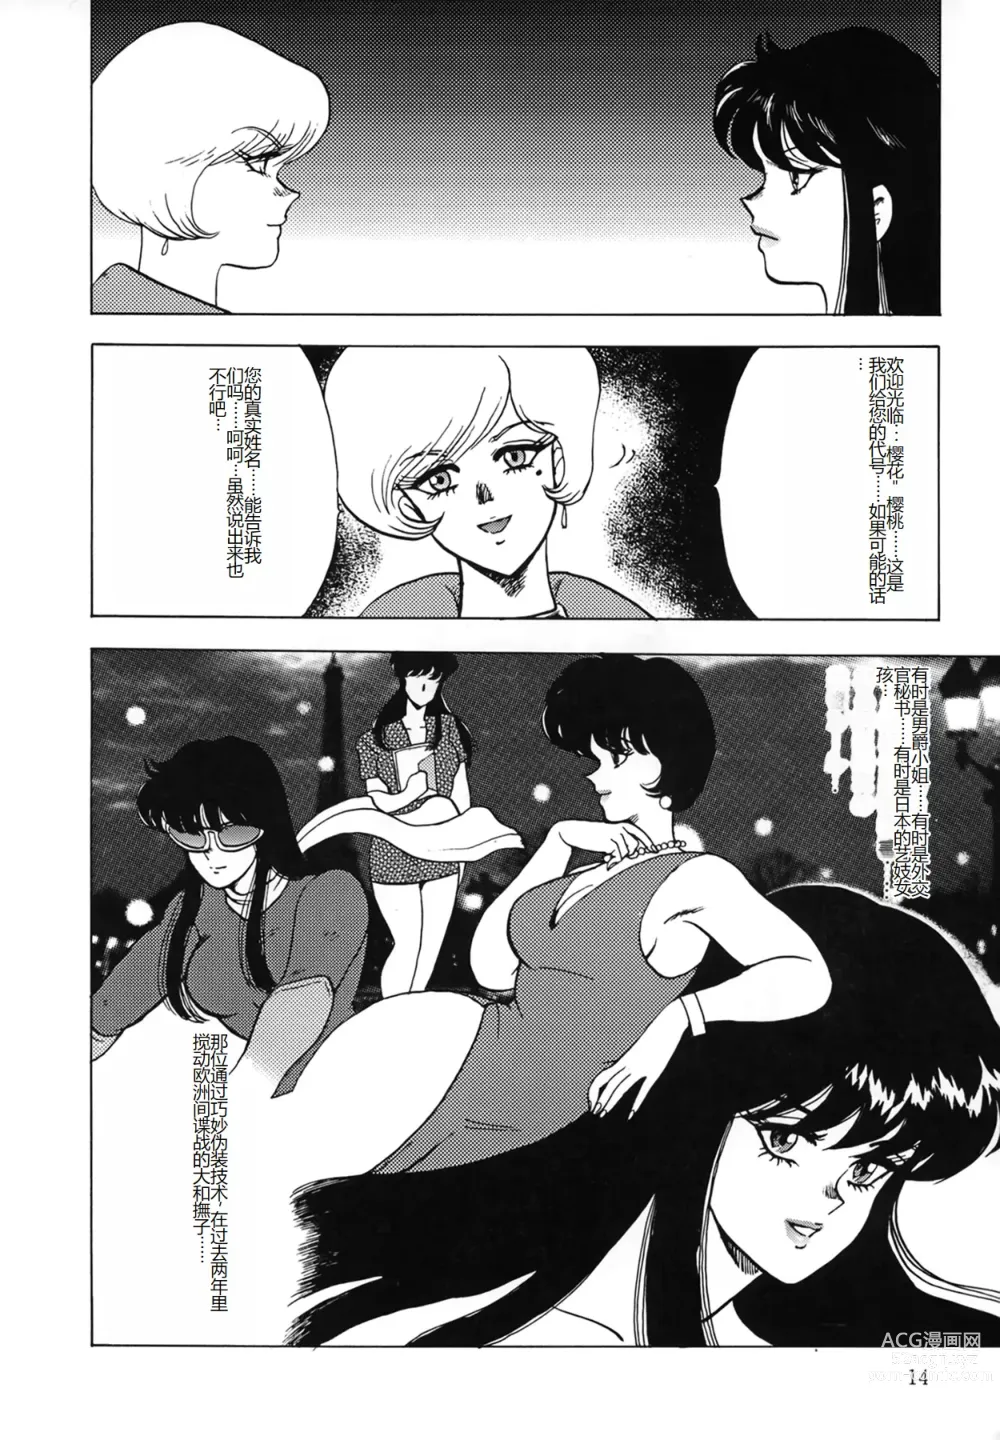 Page 14 of manga Inbi Teikoku